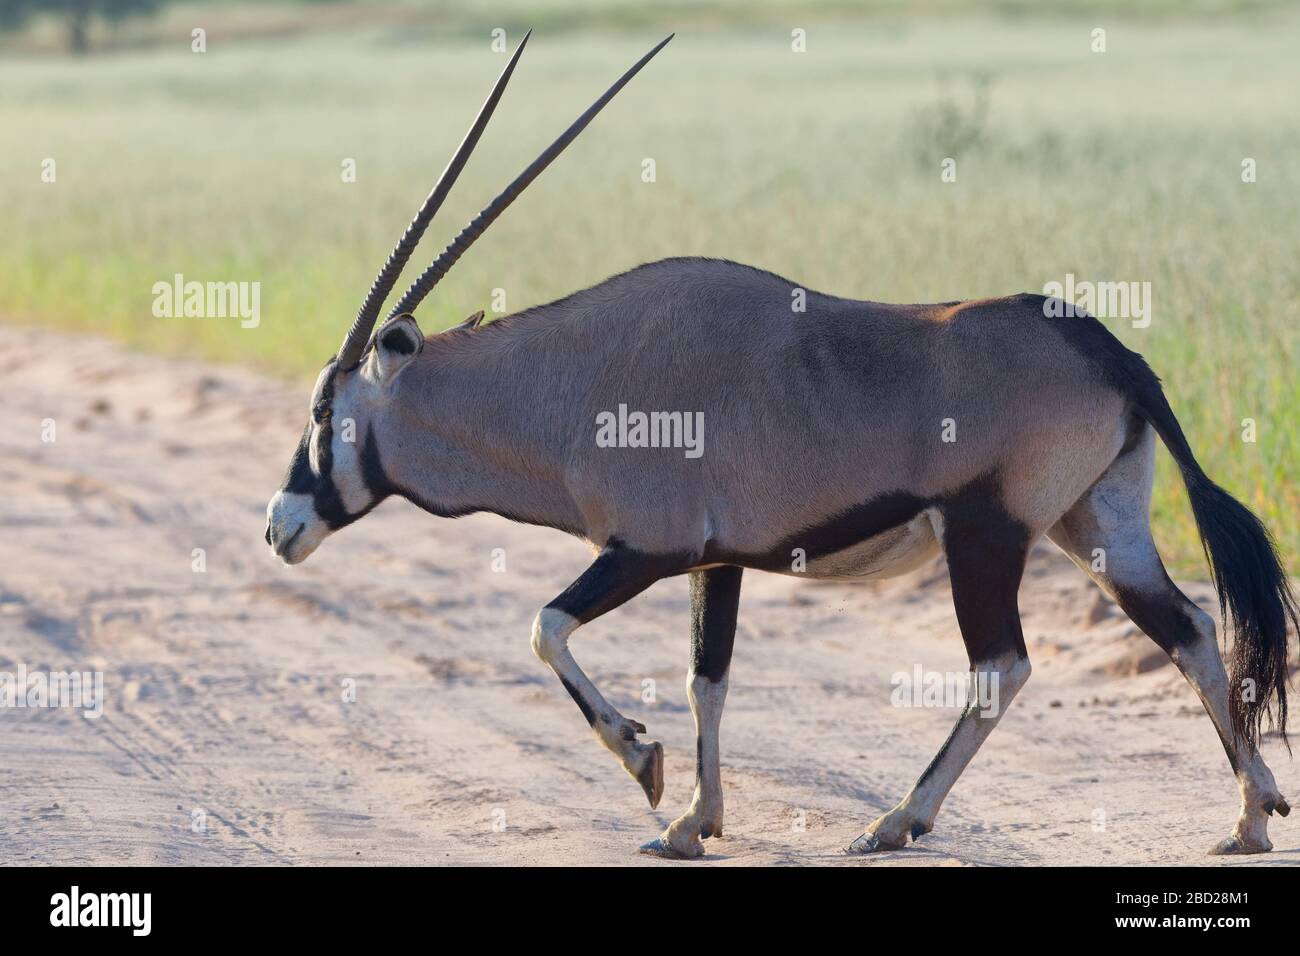 Gemsbok (Oryx gazella), adulte, traversant une route de terre, Kgalagadi TransFrontier Park, Northern Cape, Afrique du Sud, Afrique Banque D'Images